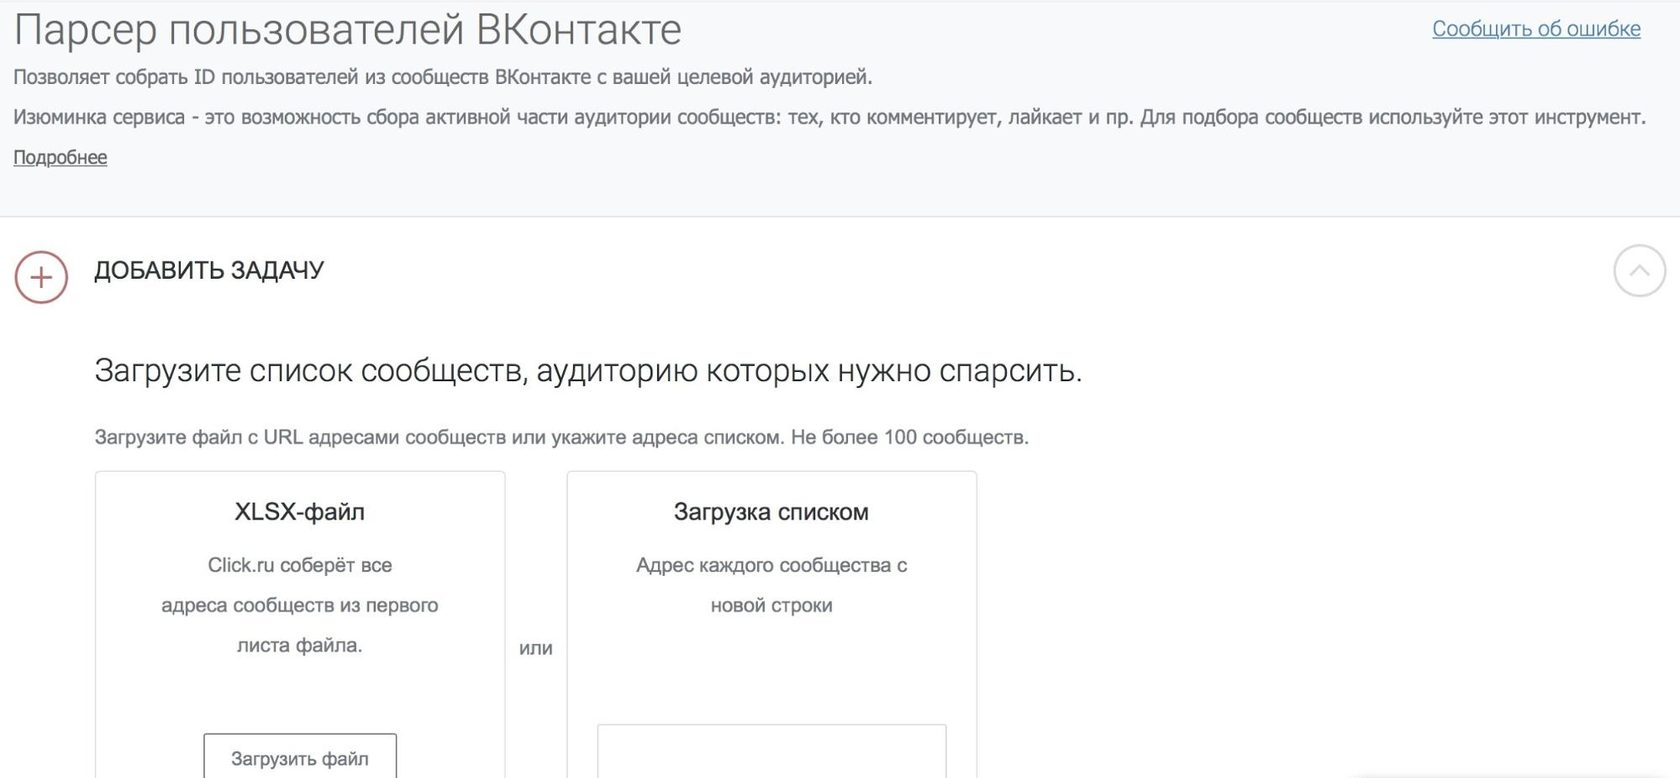 Парсер пользователей ВКонтакте онлайн